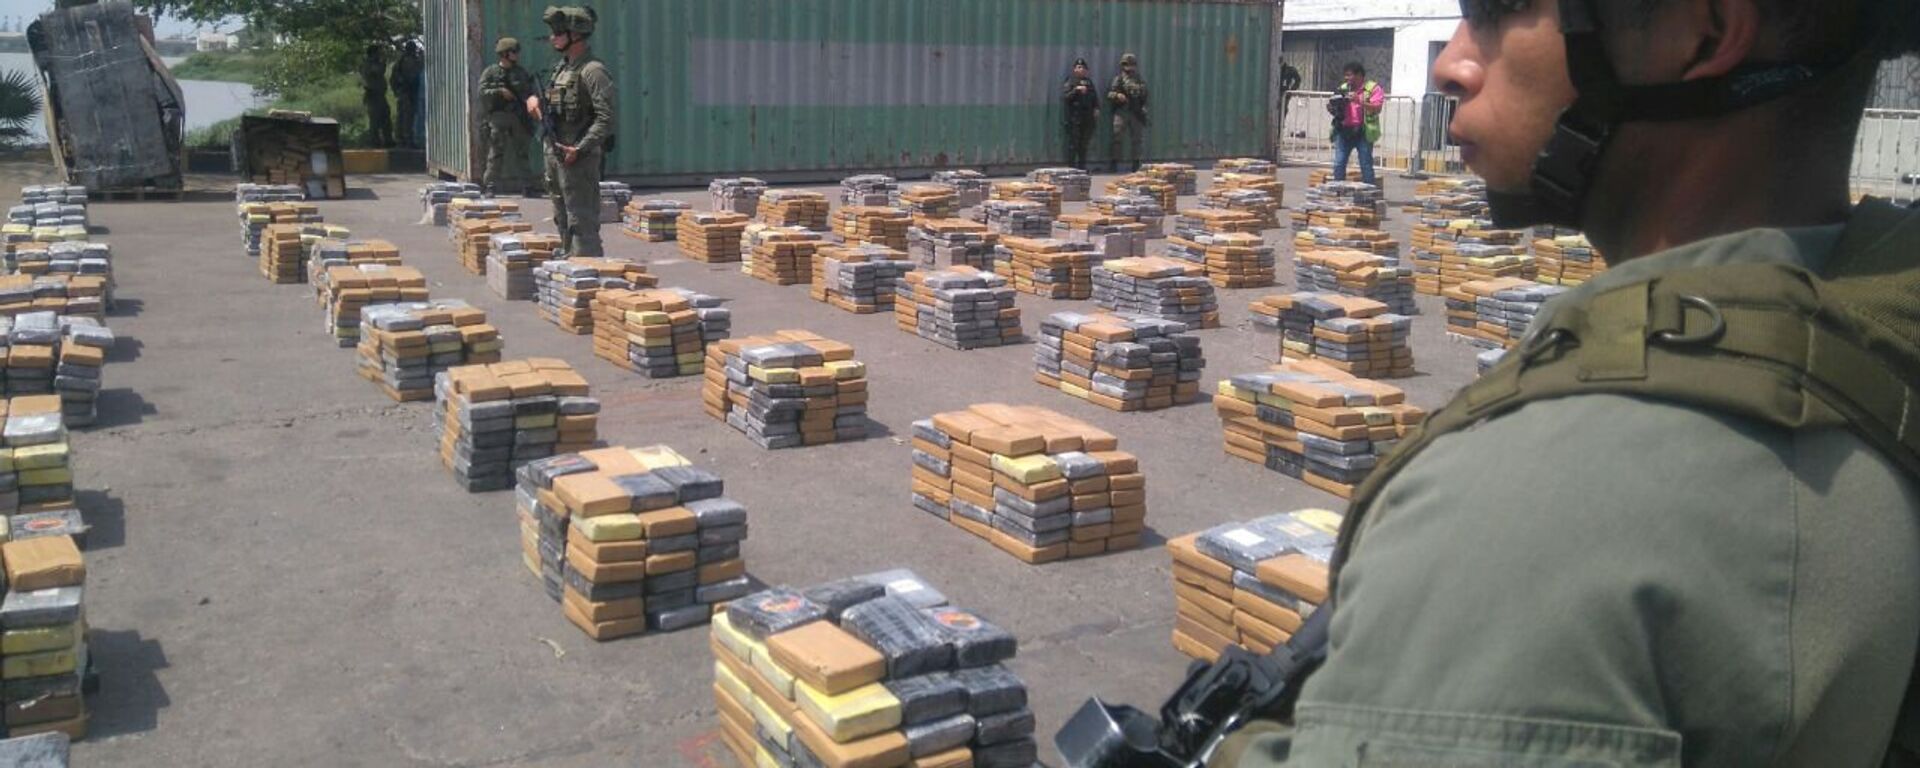 Колумбийские военнослужащие охраняют упаковки с кокаином после того, как колумбийская полиция изъяла более шести тонн этого наркотика в портовом городе Барранкилья - Sputnik Грузия, 1920, 30.07.2019